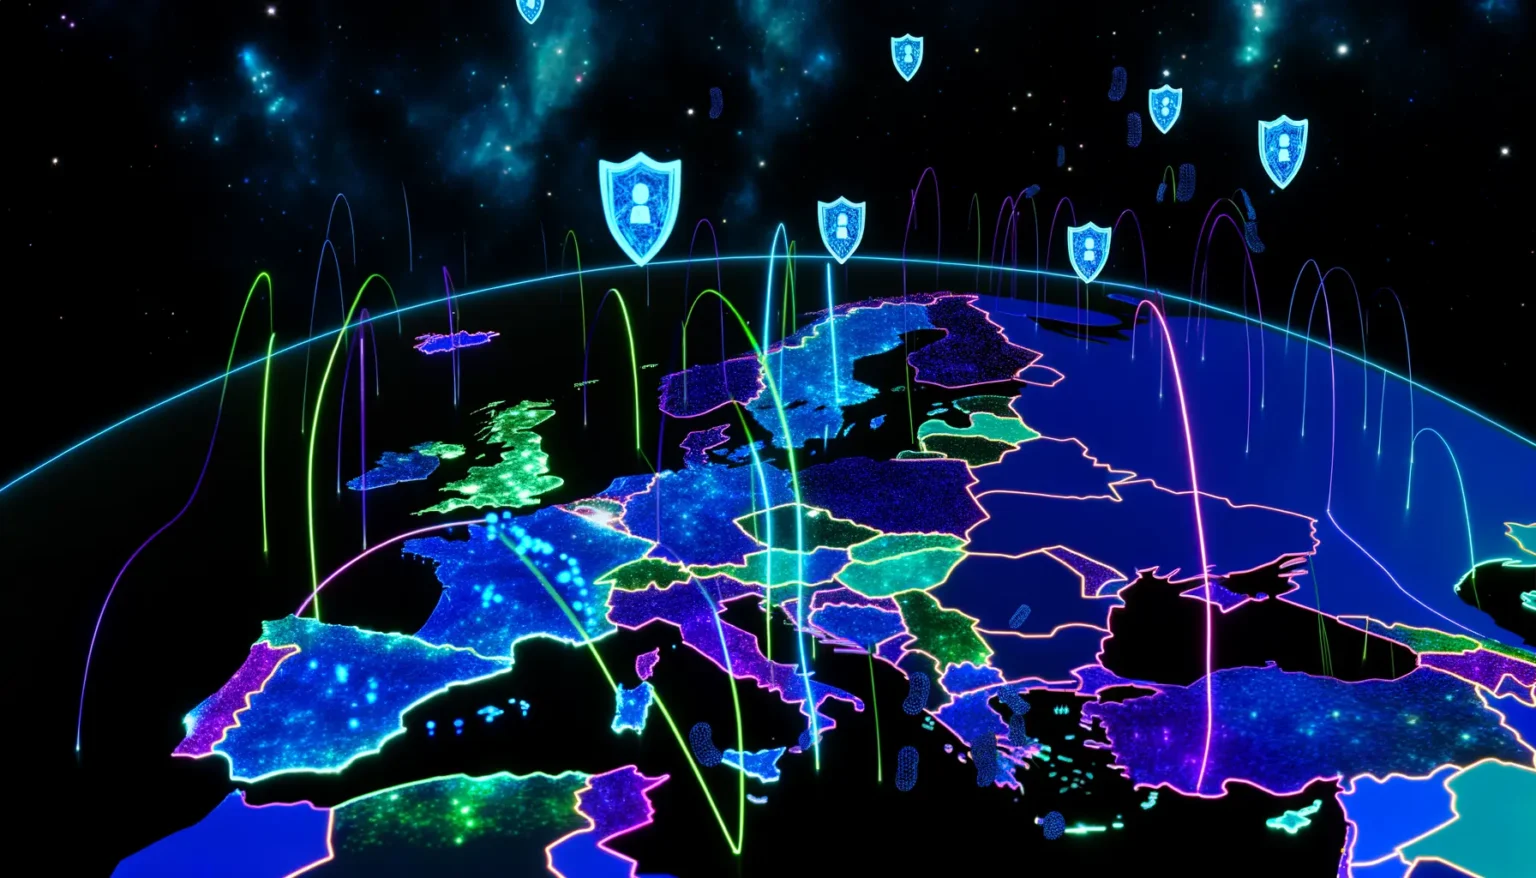 Eine stilisierte Darstellung von Europa mit neonfarbenen Konturen auf schwarzem Hintergrund, das von mehreren farbigen, bogenförmigen Linien überbrückt wird, die Datenströme symbolisieren könnten. Über dem Kontinent schweben Schildsymbole mit einem Schloss-Symbol, was auf Cybersecurity hinweist. Der Hintergrund zeigt einen Sternenhimmel, was der Szene ein futuristisches und digitales Flair verleiht.